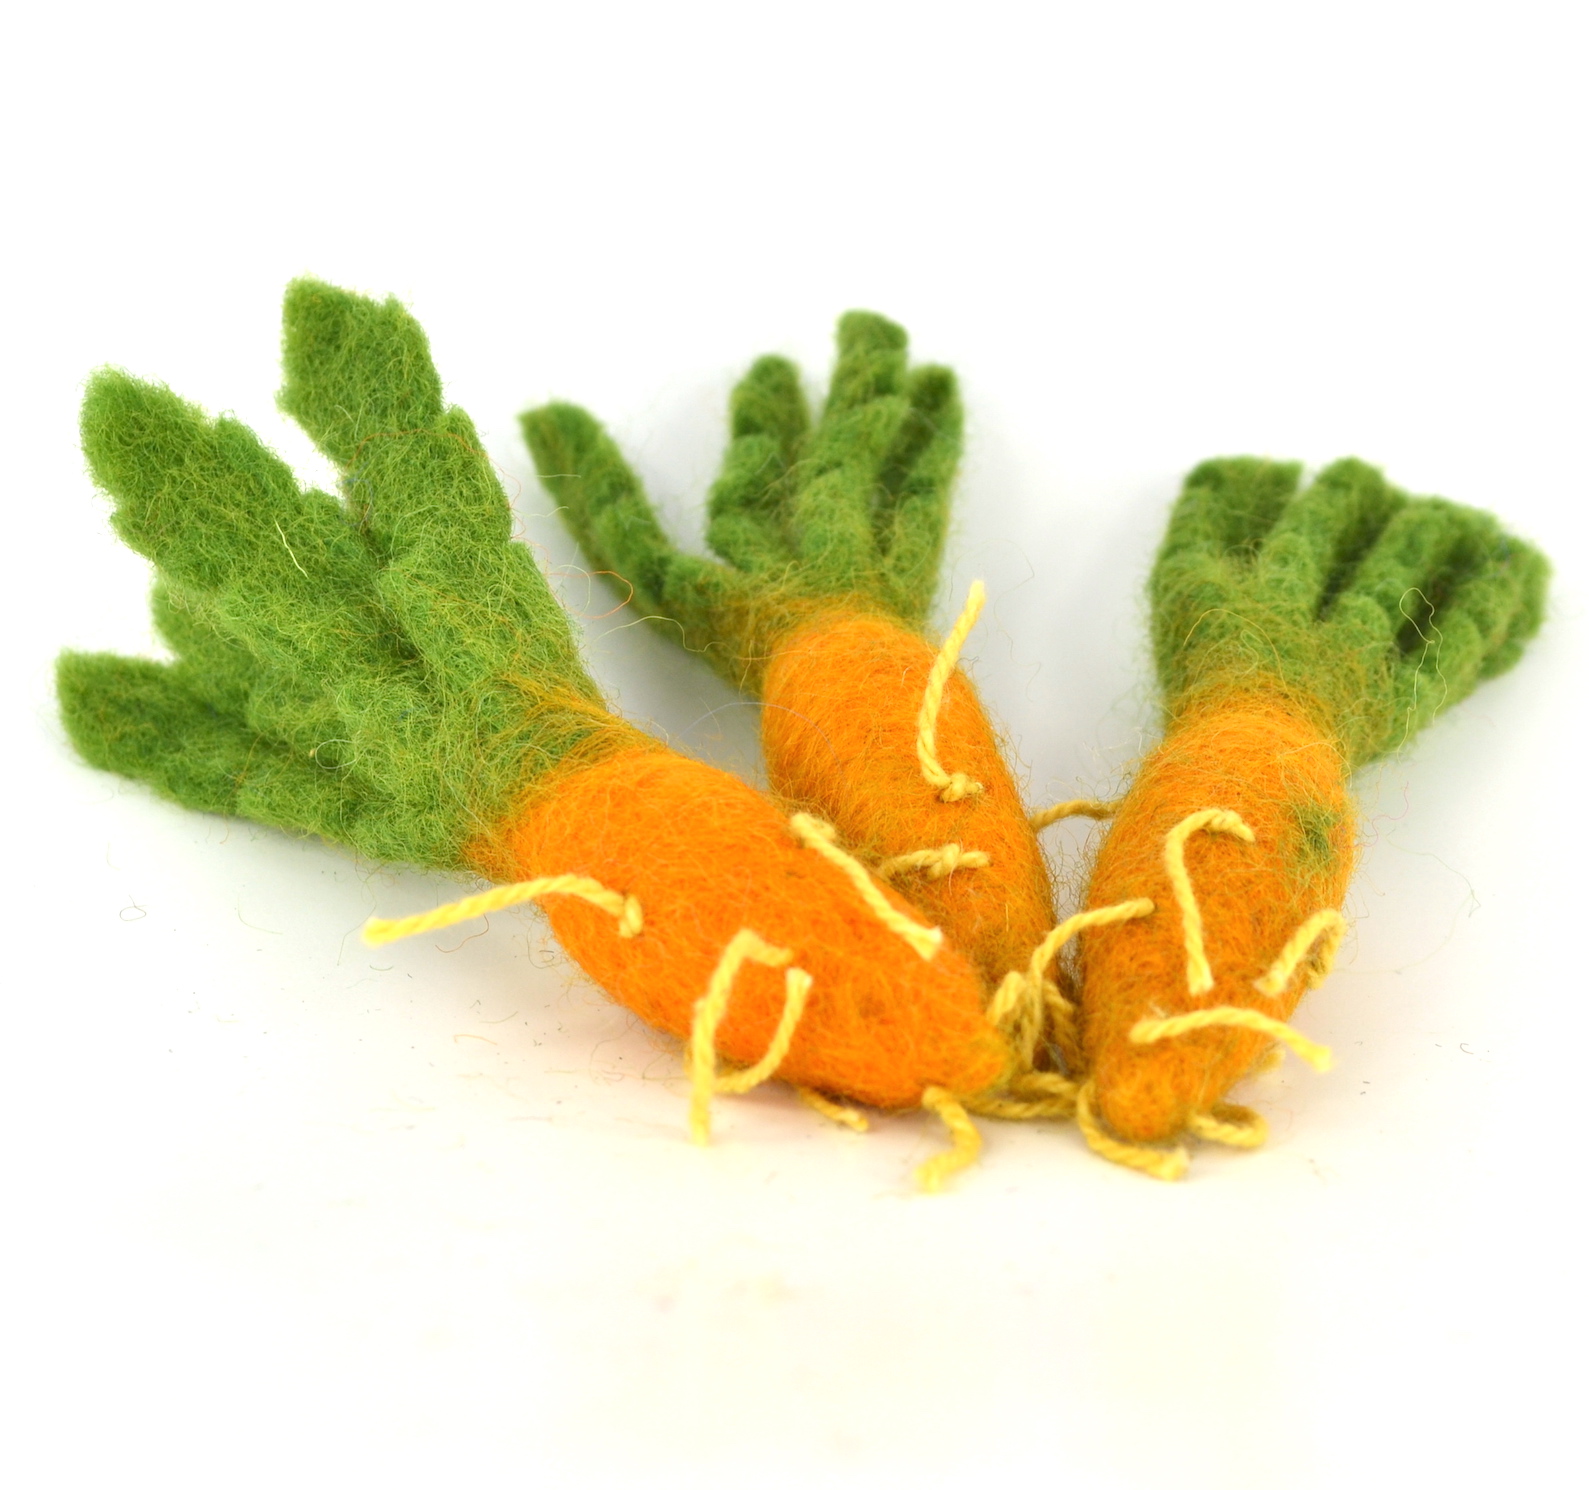 Food - Mini Carrot 3pcs